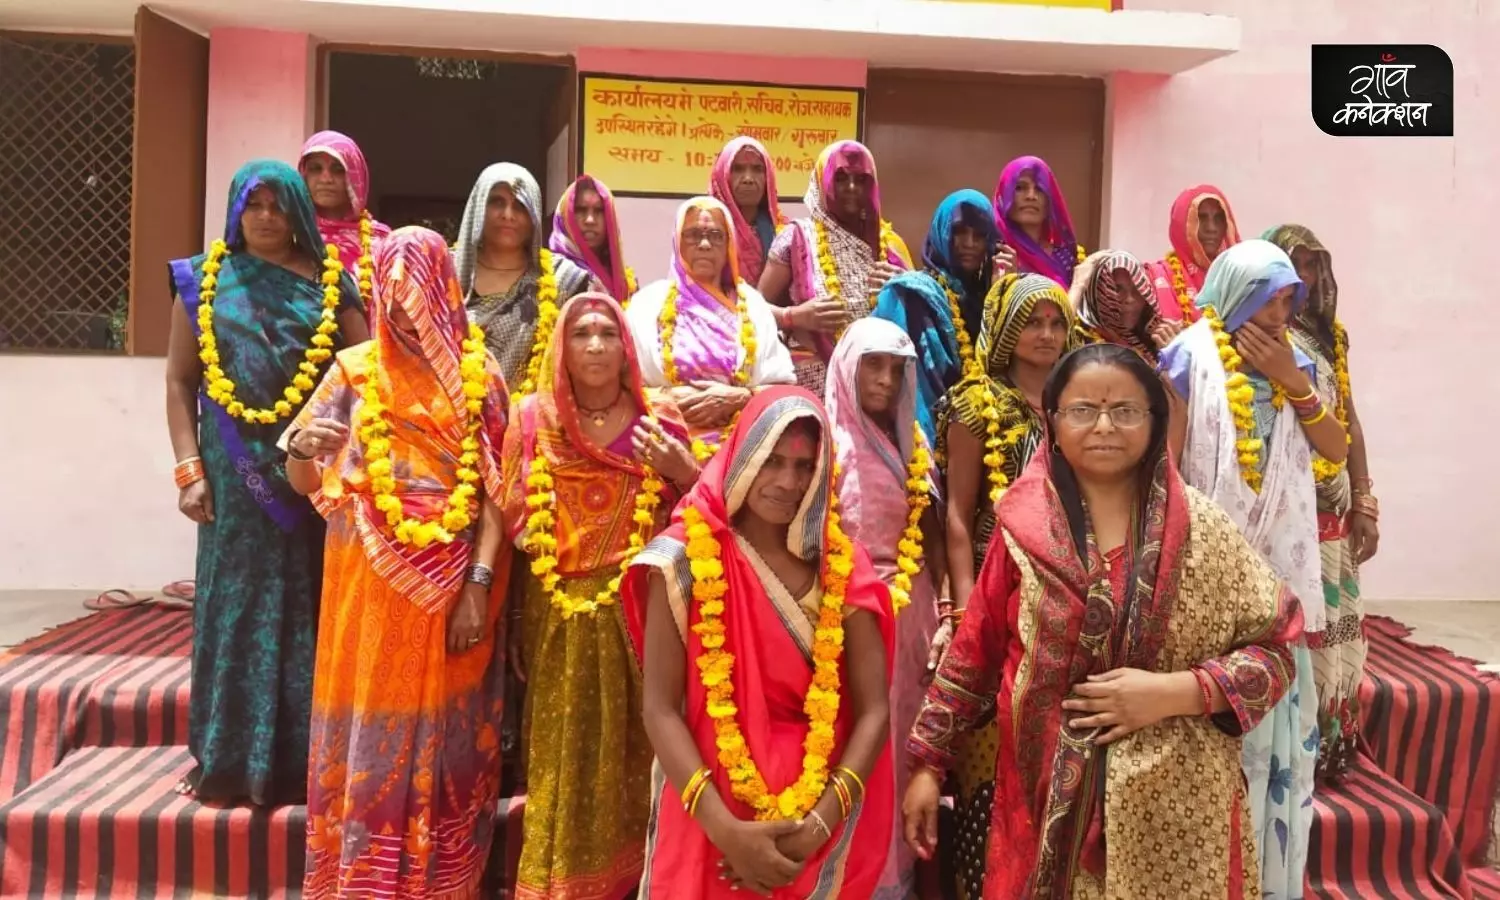 मध्य प्रदेश: महिला सशक्तिकरण का उदाहरण है यह ग्राम पंचायत, निर्विरोध चुनी गई सरपंच से लेकर 17 पंच भी हैं महिलाएं